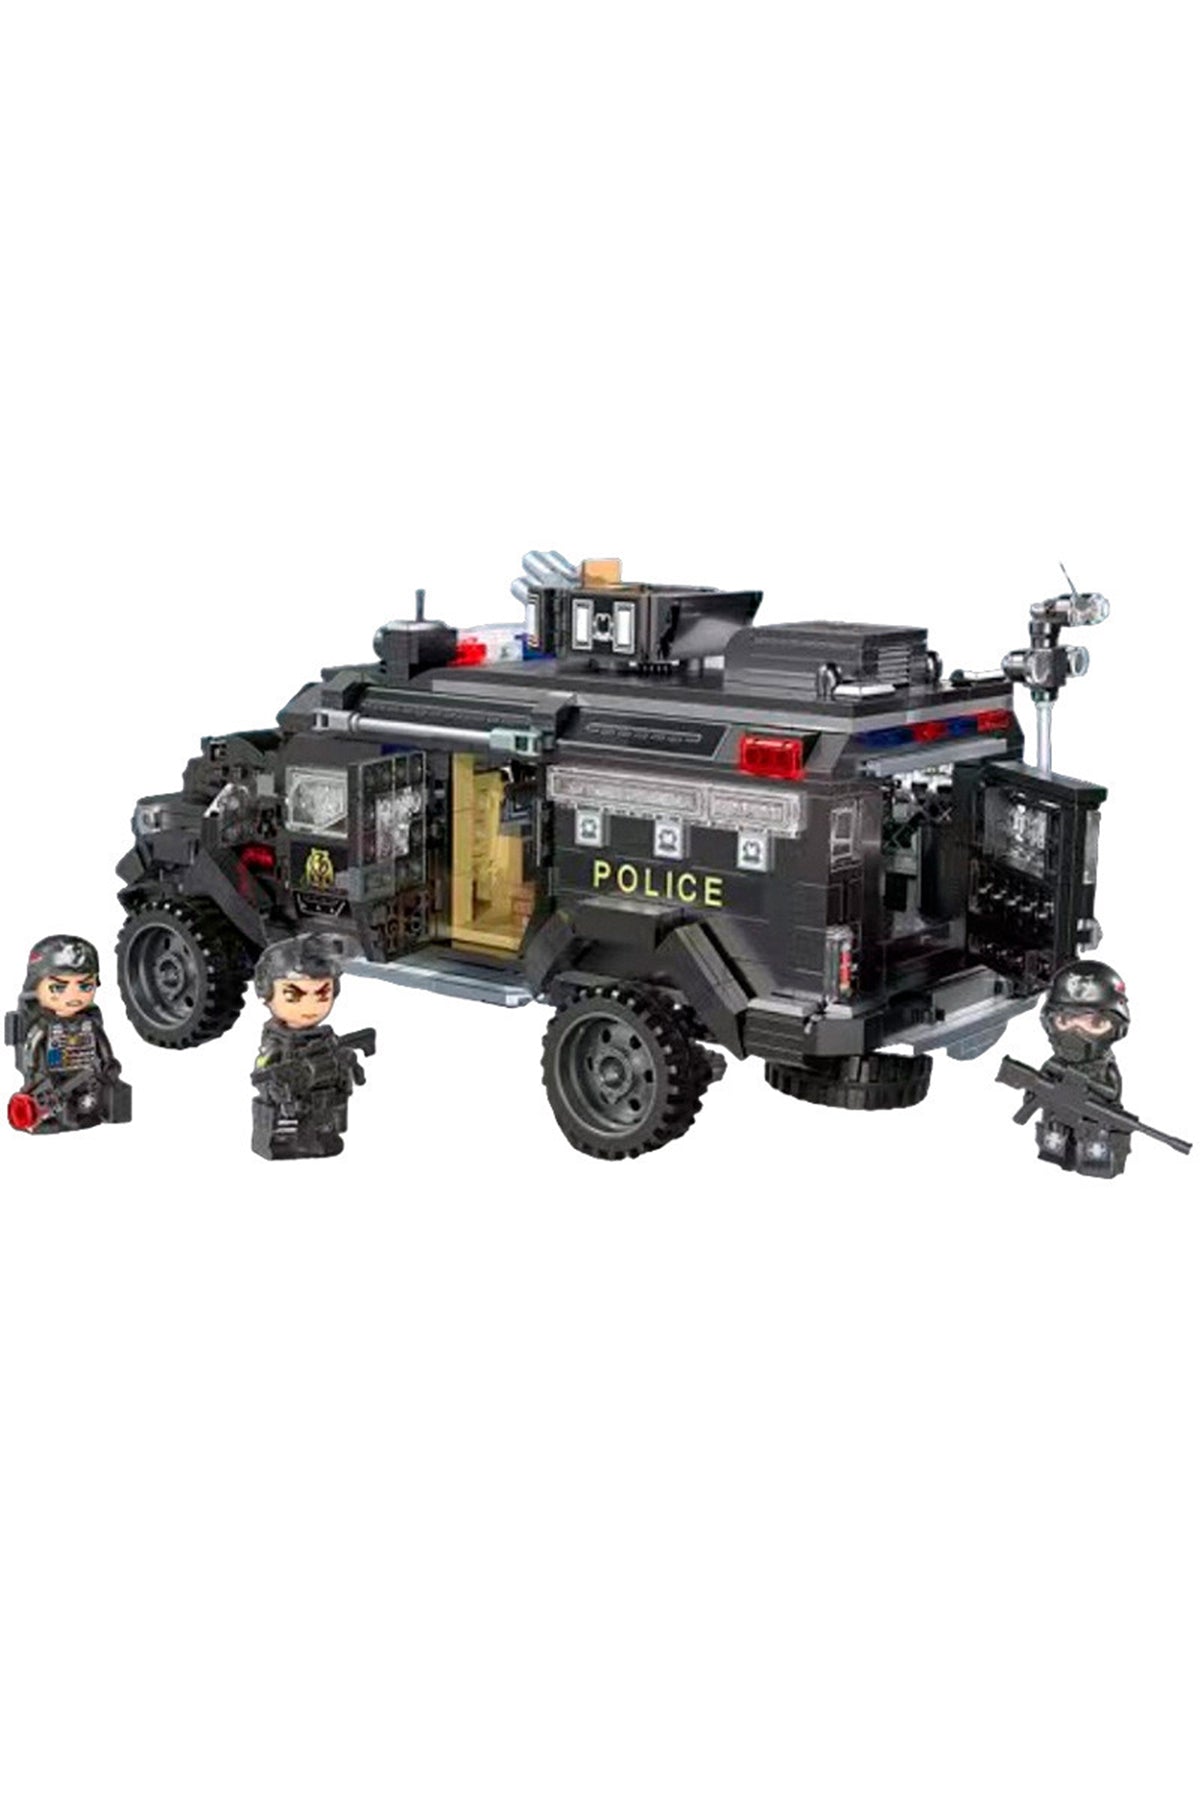 Qman Mine City Police Toy Car